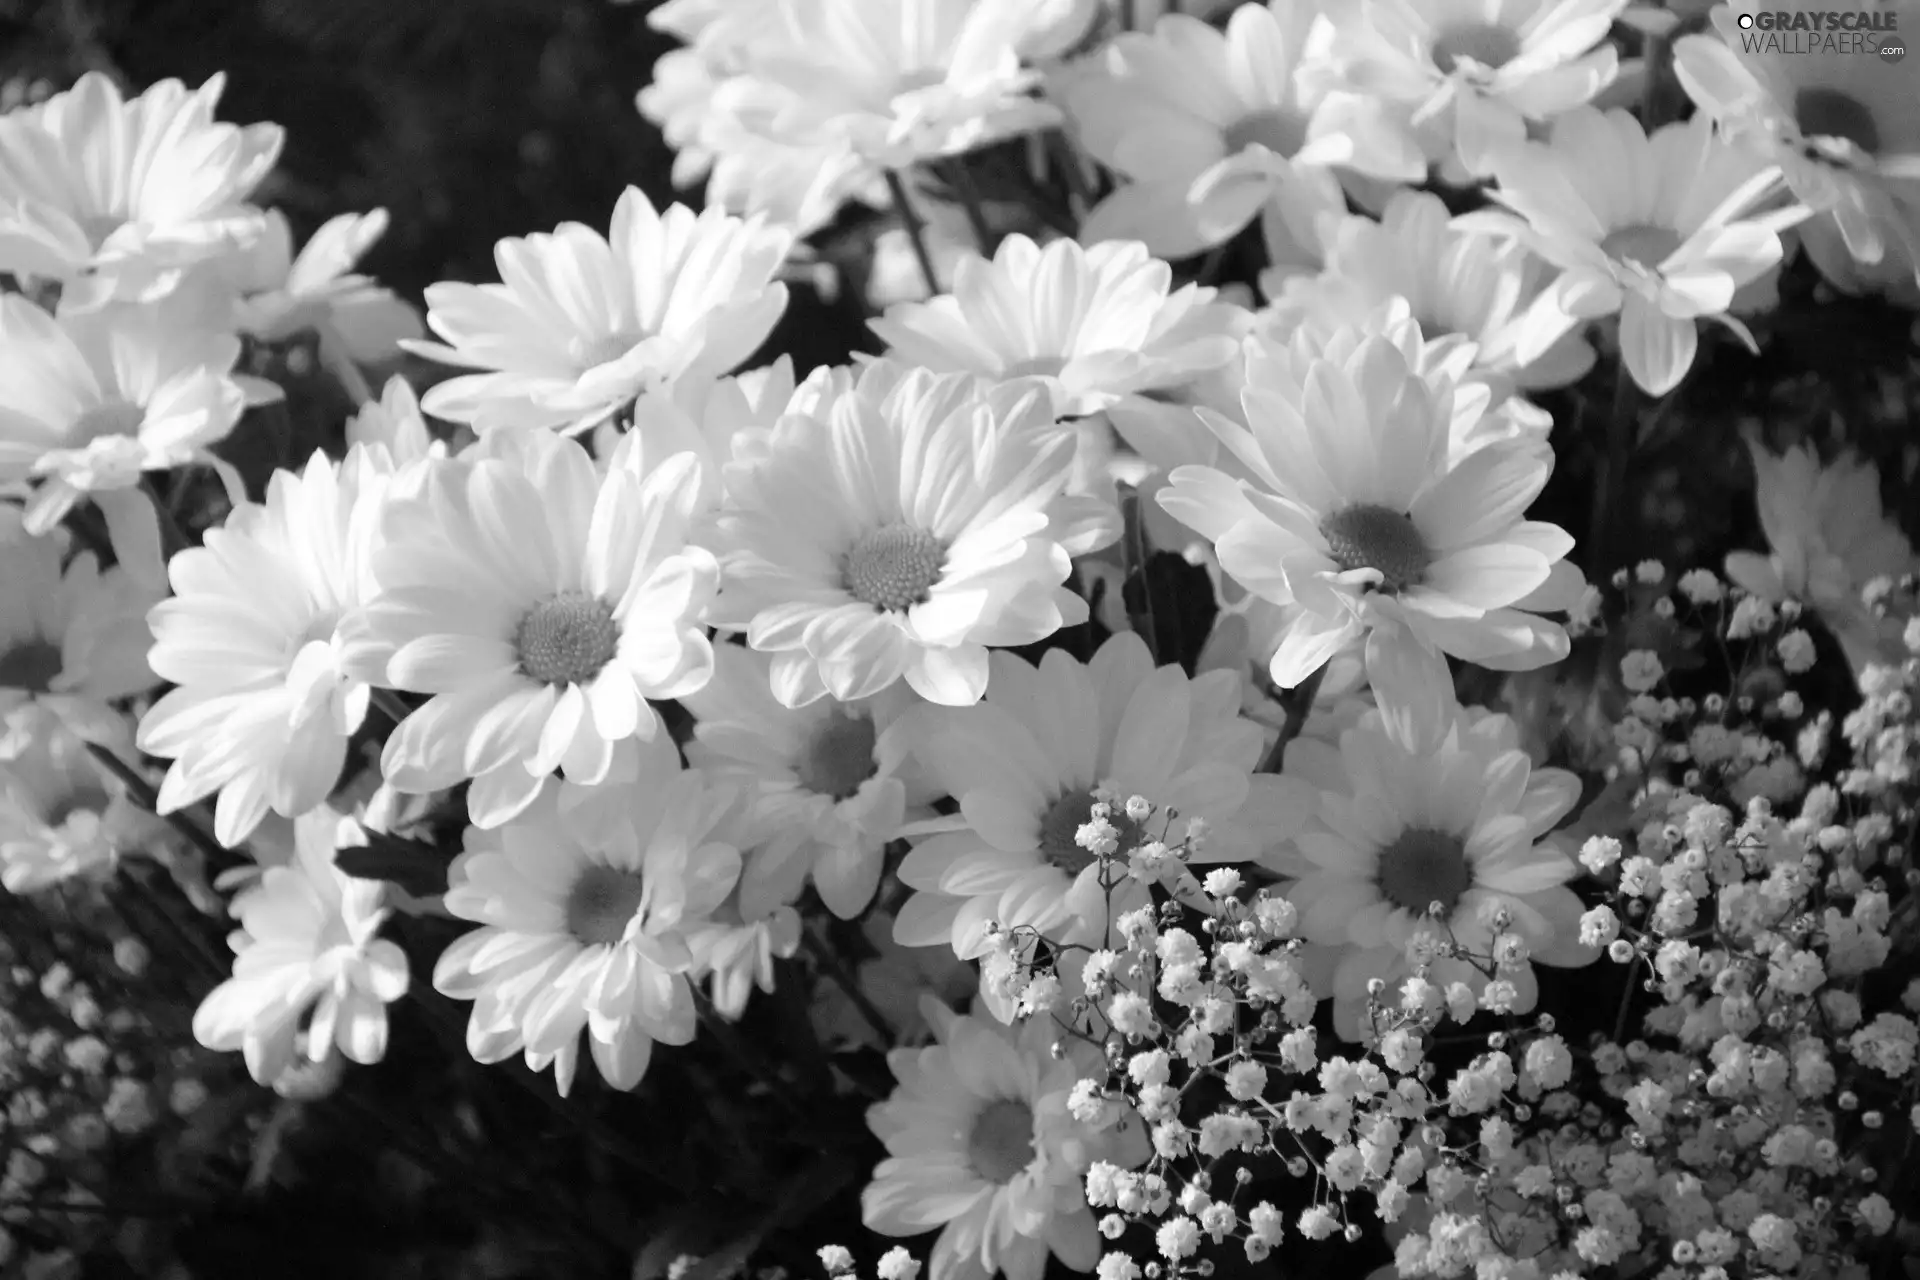 White, chrysanthemums, Single